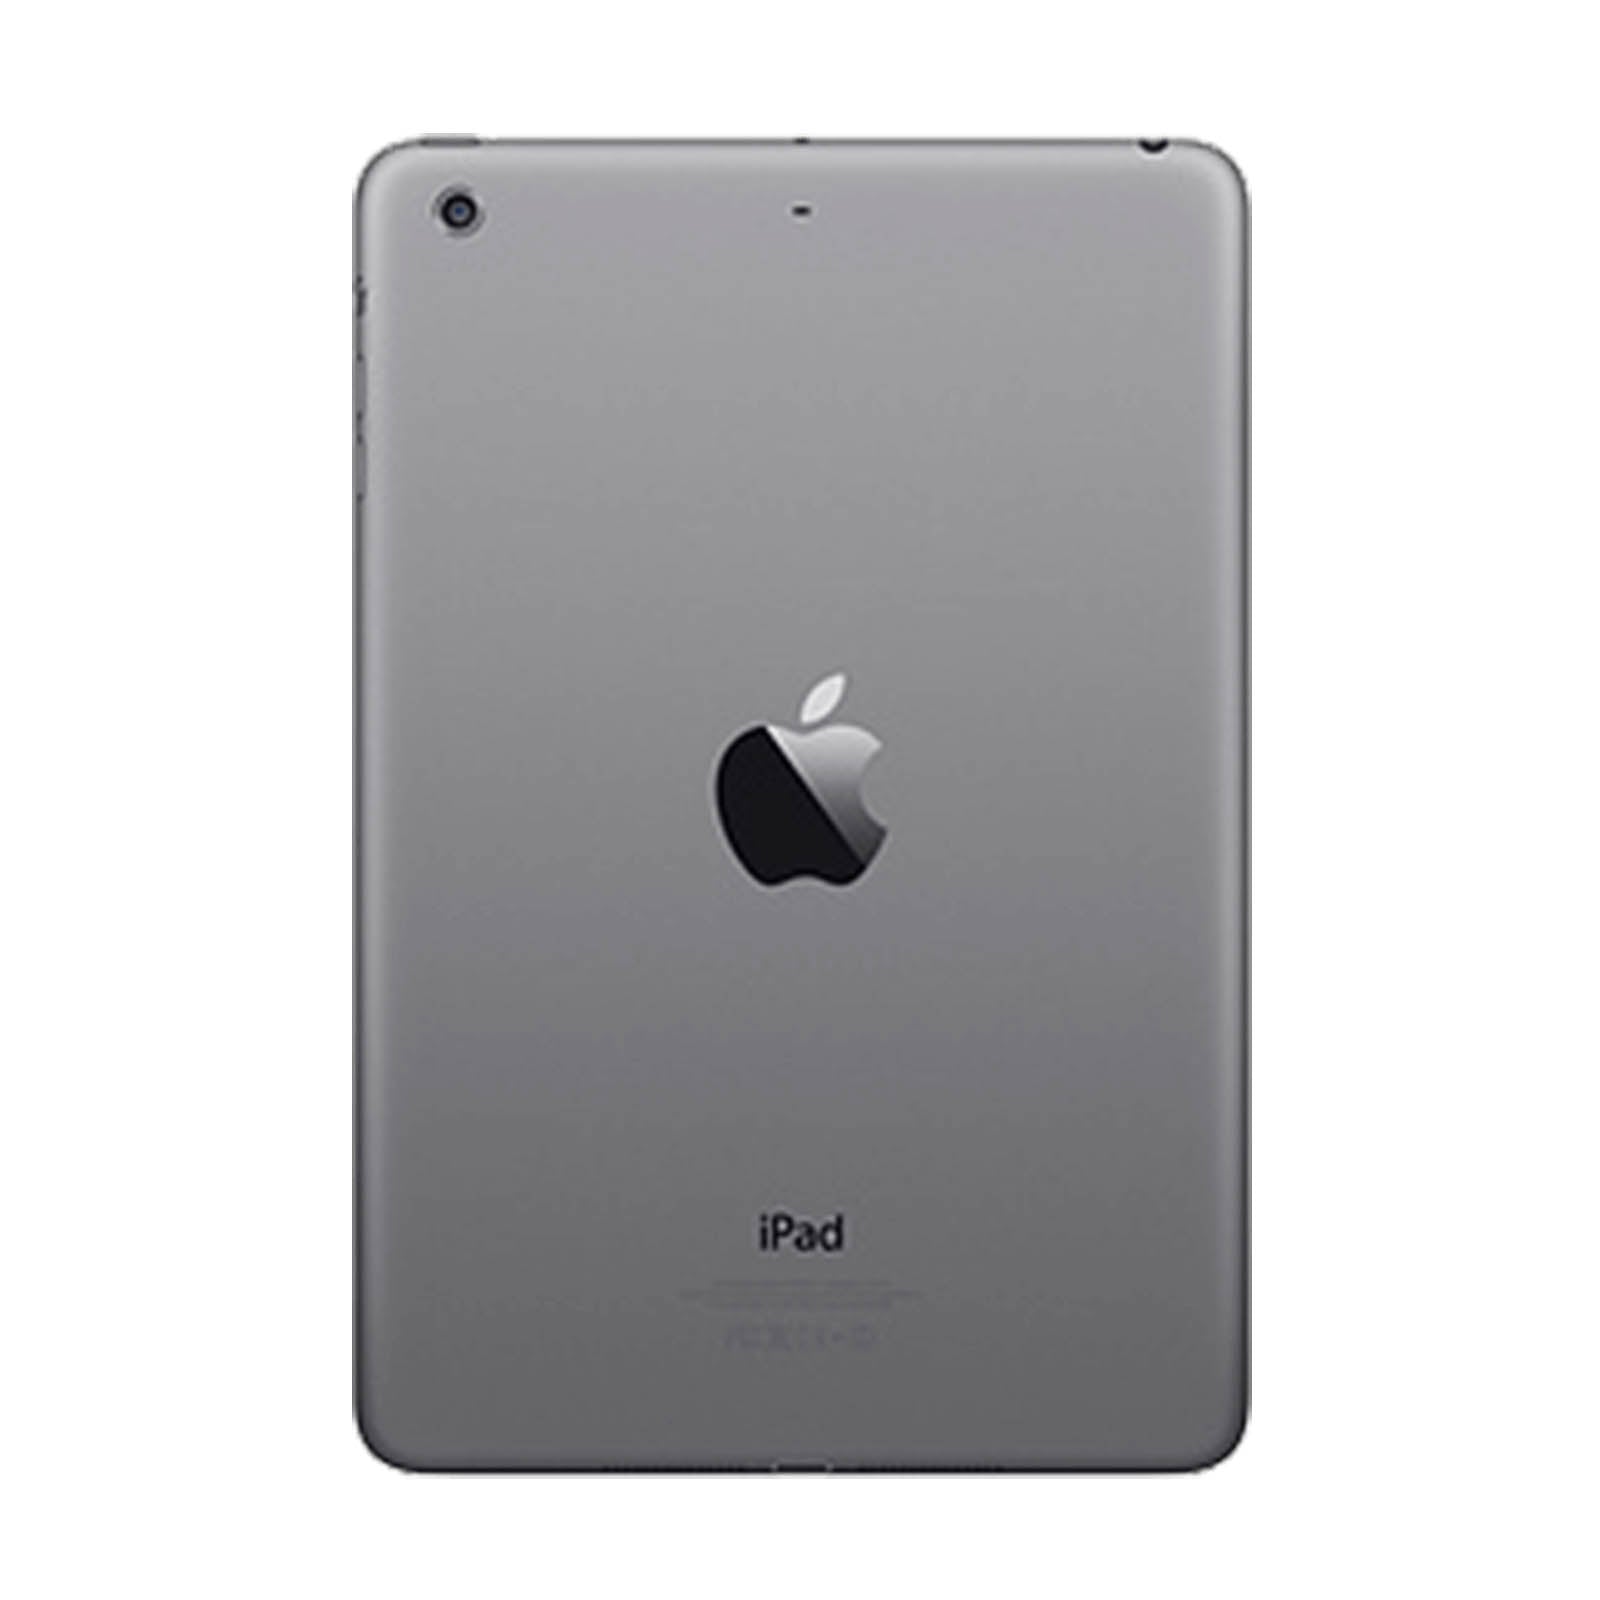 iPad Mini 2 32GB WiFi Space Grau Sehr Gut WiFi